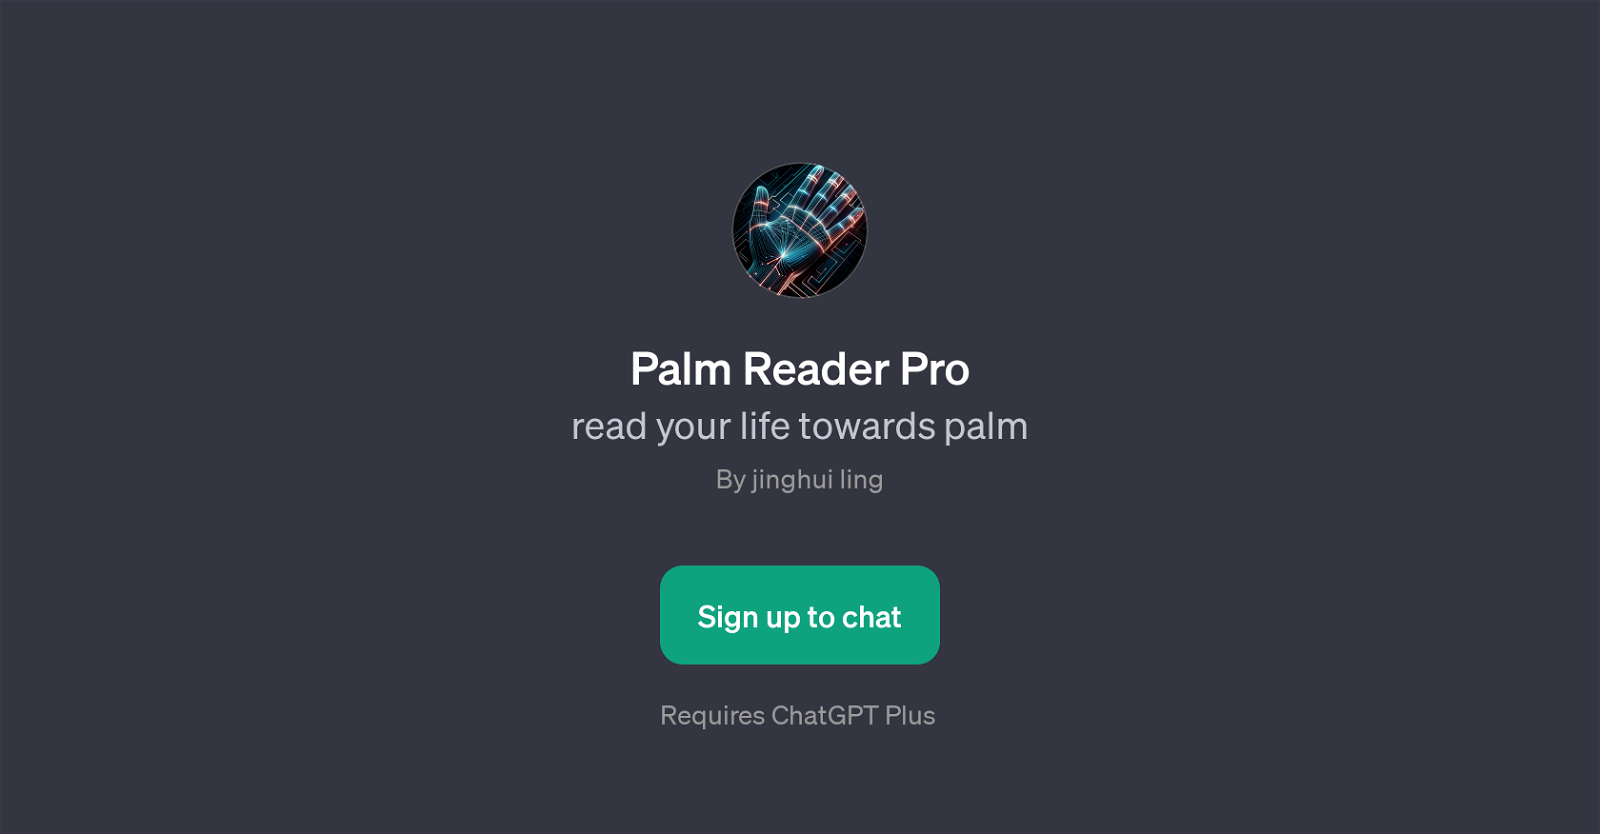 Palm Reader Pro website